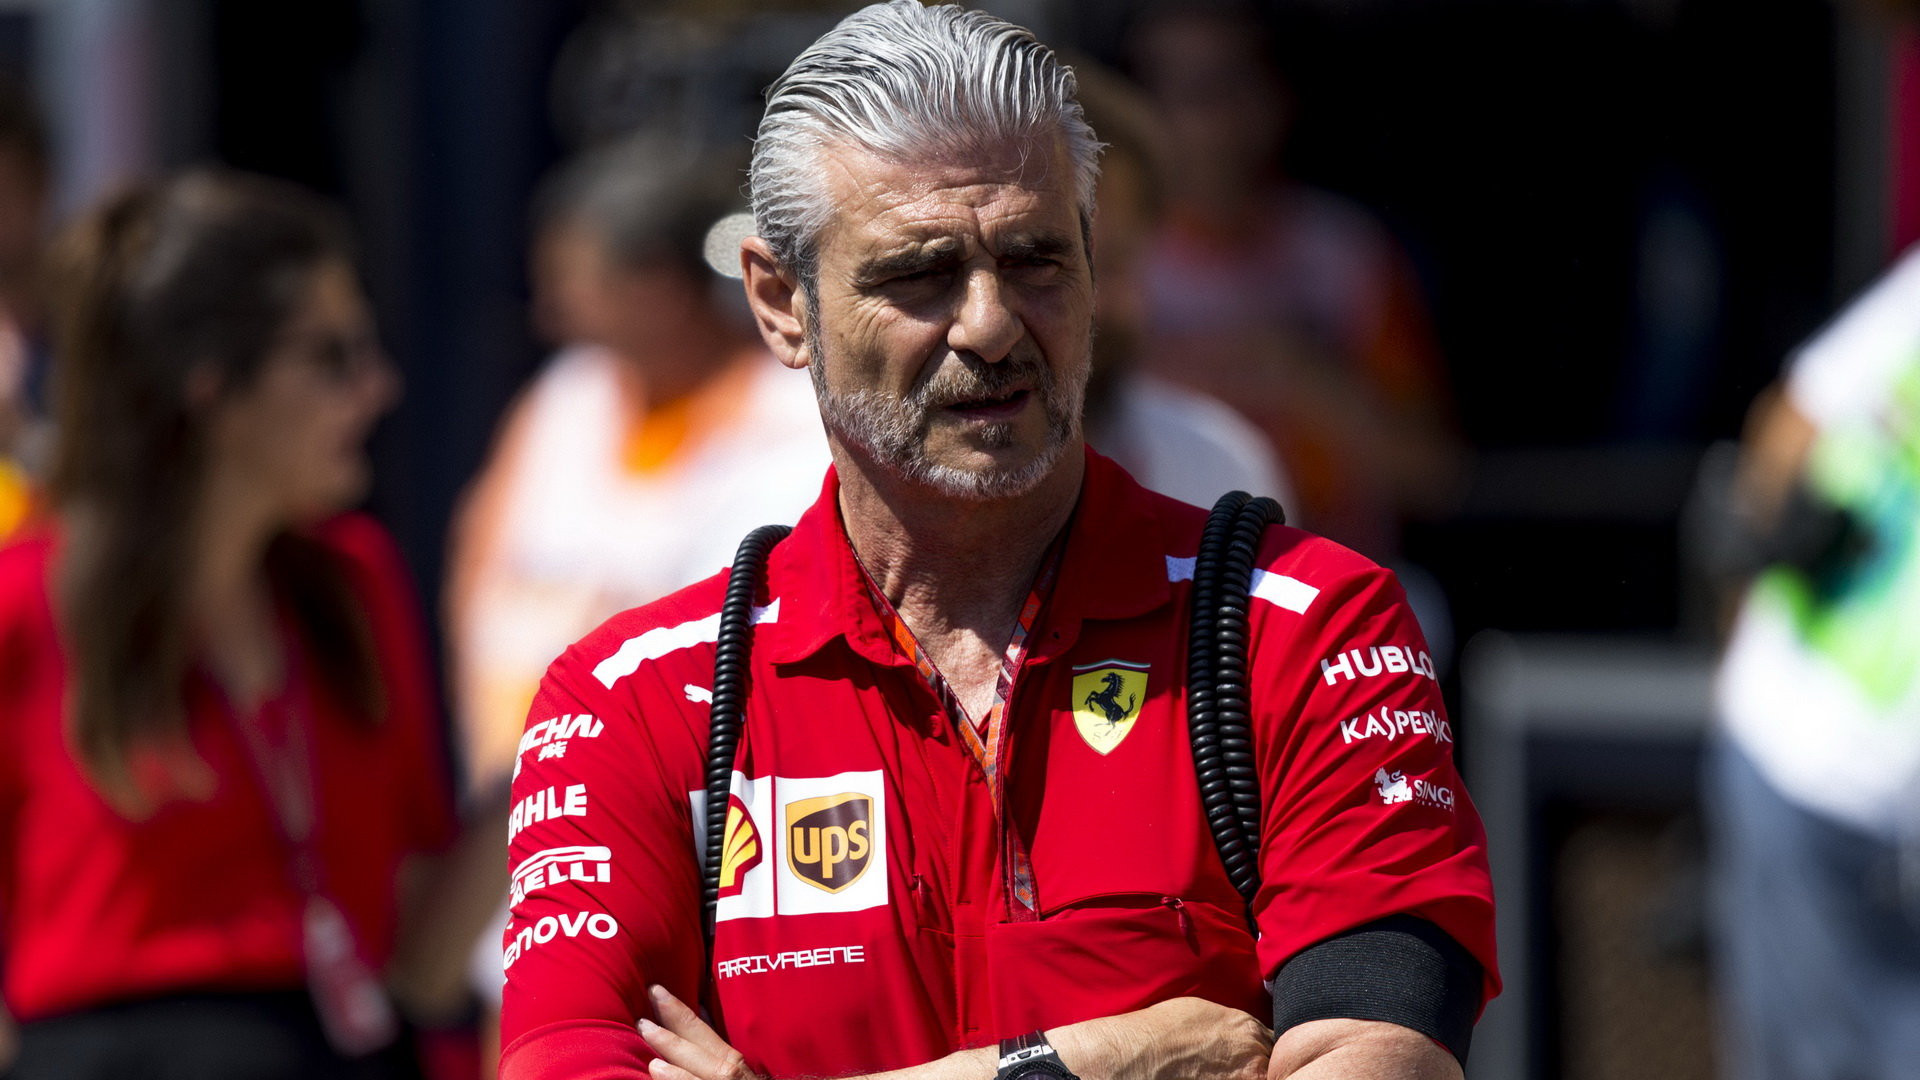 Maurizio Arrivabene se zvýšeným zájmem sleduje výkony mladého Schumachera